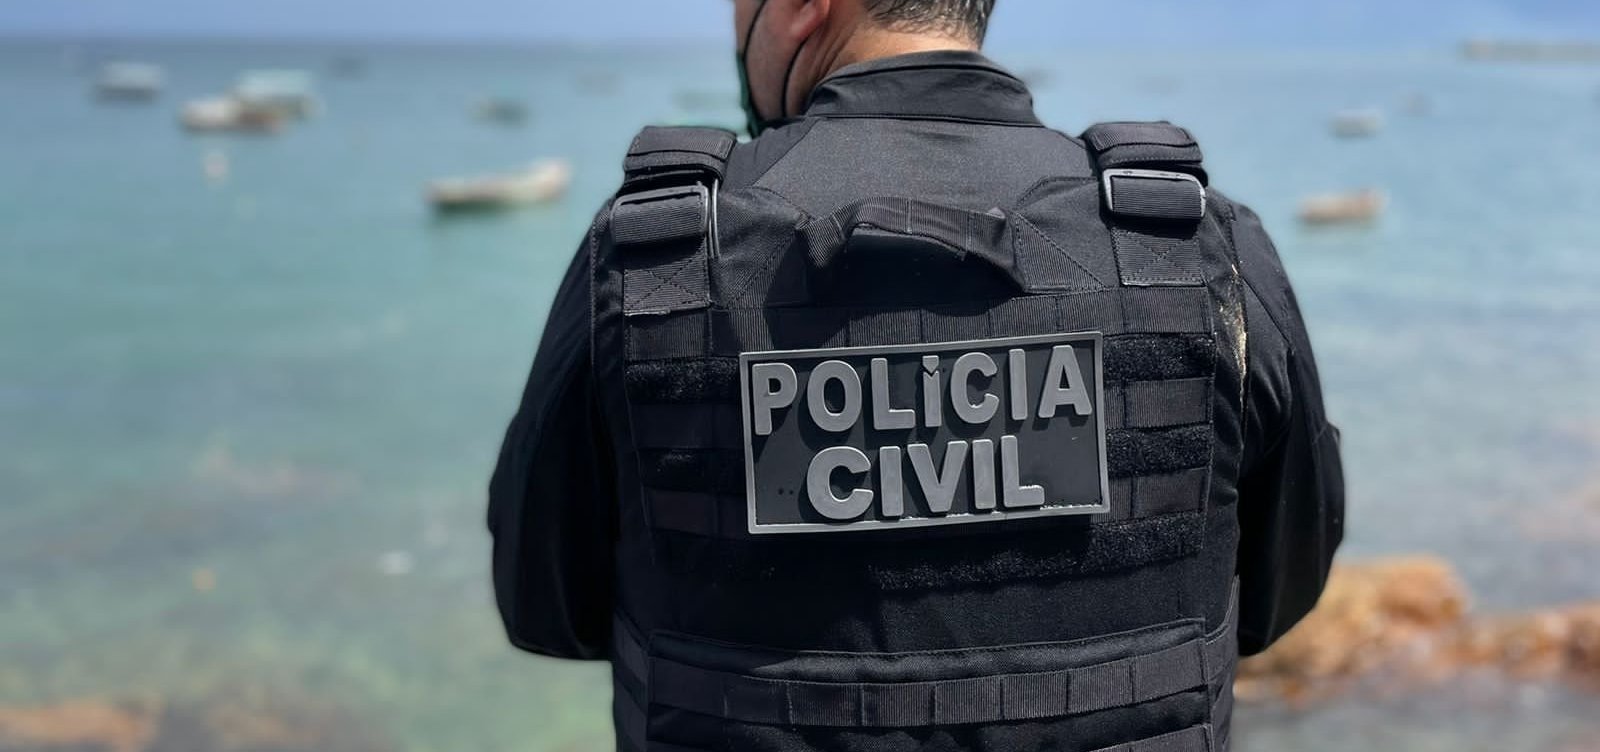 Polícia Civil da Bahia abre processo seletivo com 26 vagas via Reda